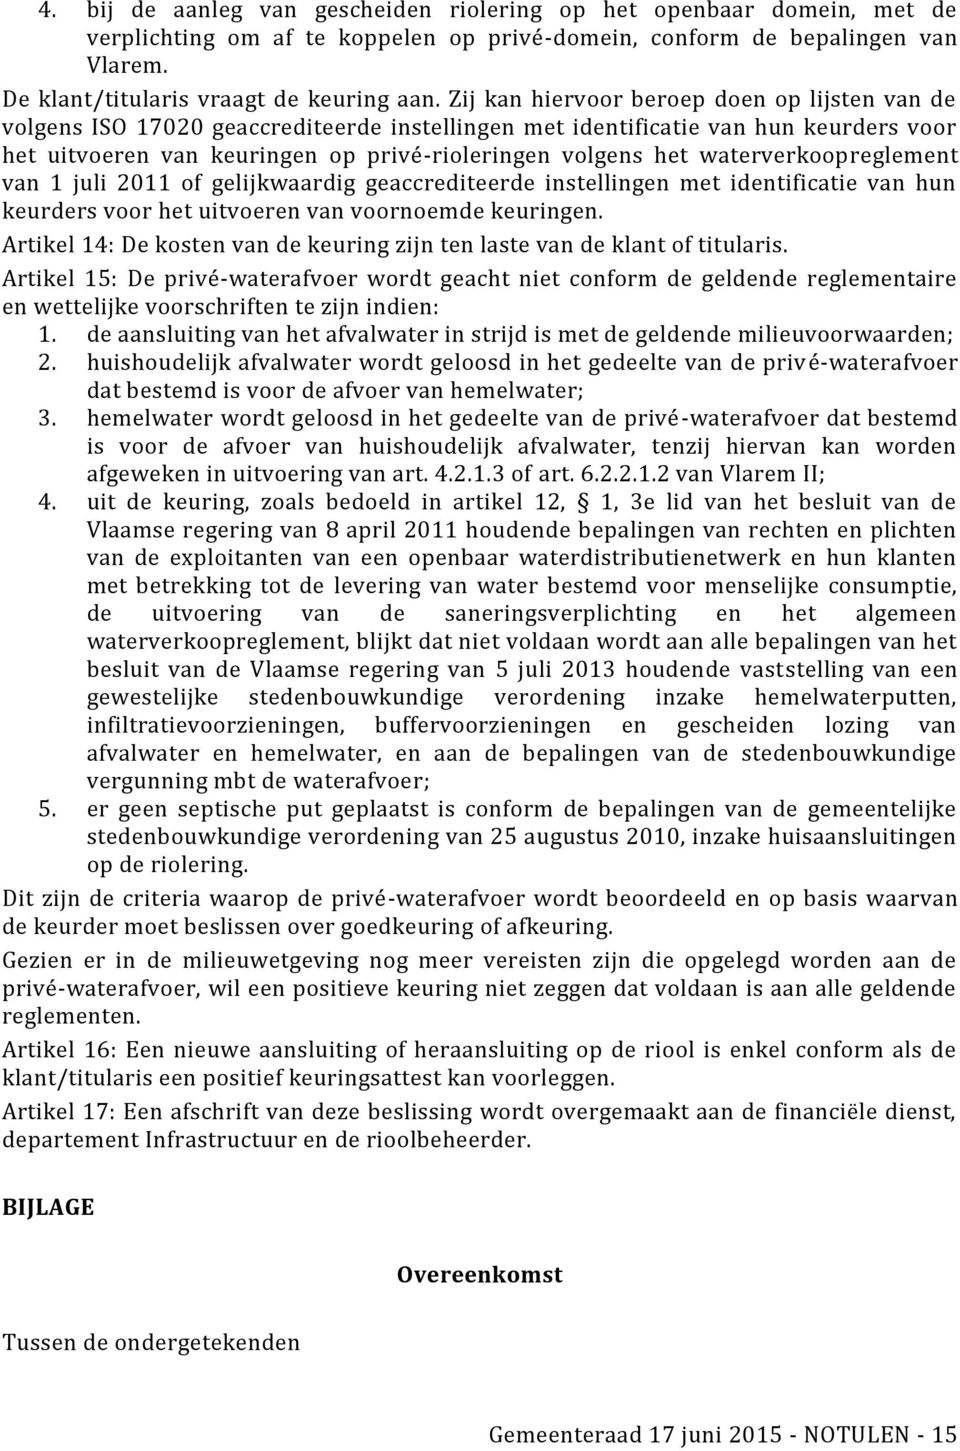 waterverkoopreglement van 1 juli 2011 of gelijkwaardig geaccrediteerde instellingen met identificatie van hun keurders voor het uitvoeren van voornoemde keuringen.